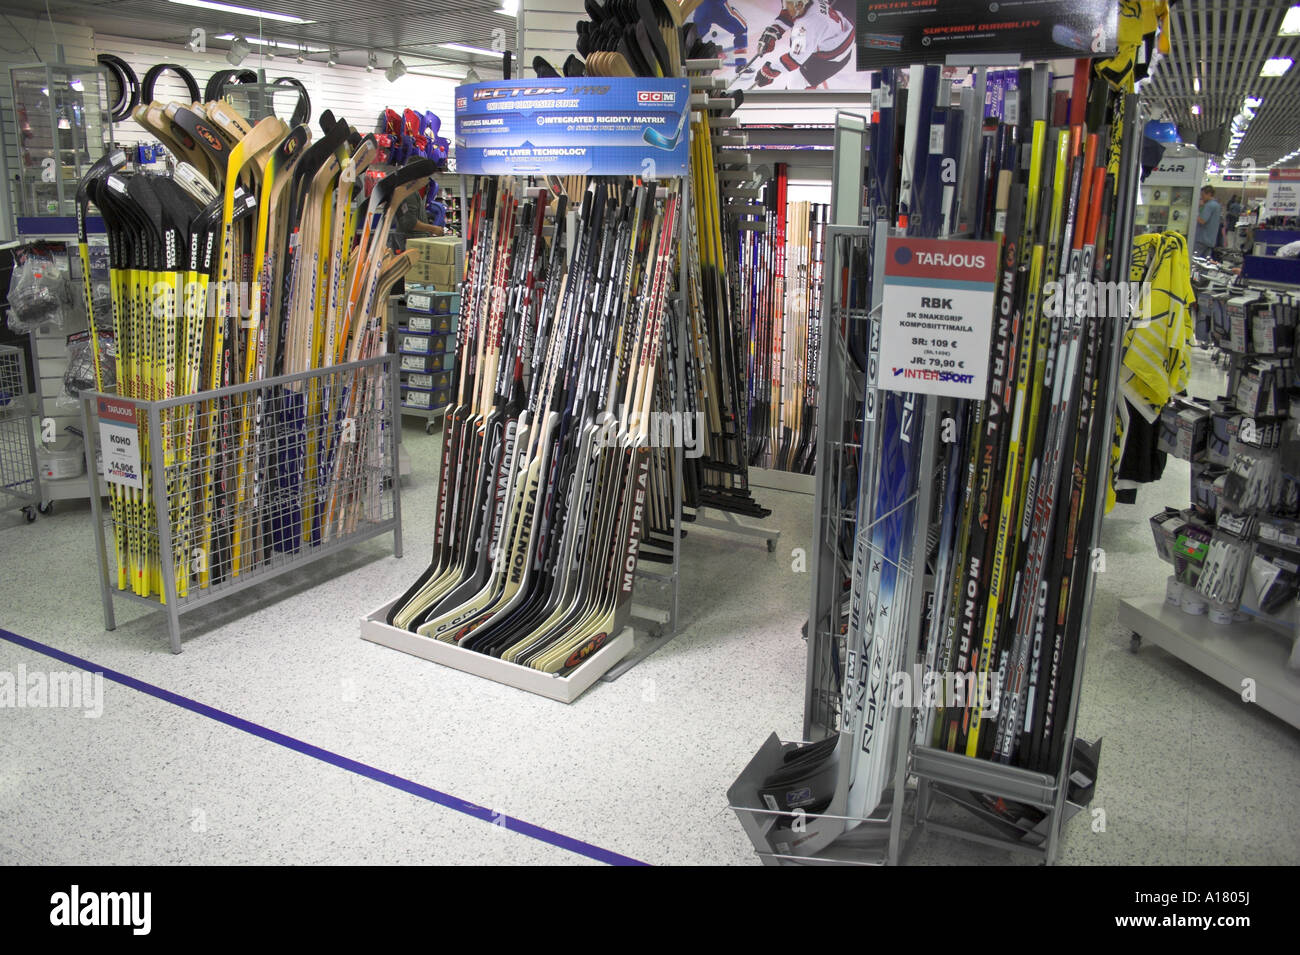 ishockey shop